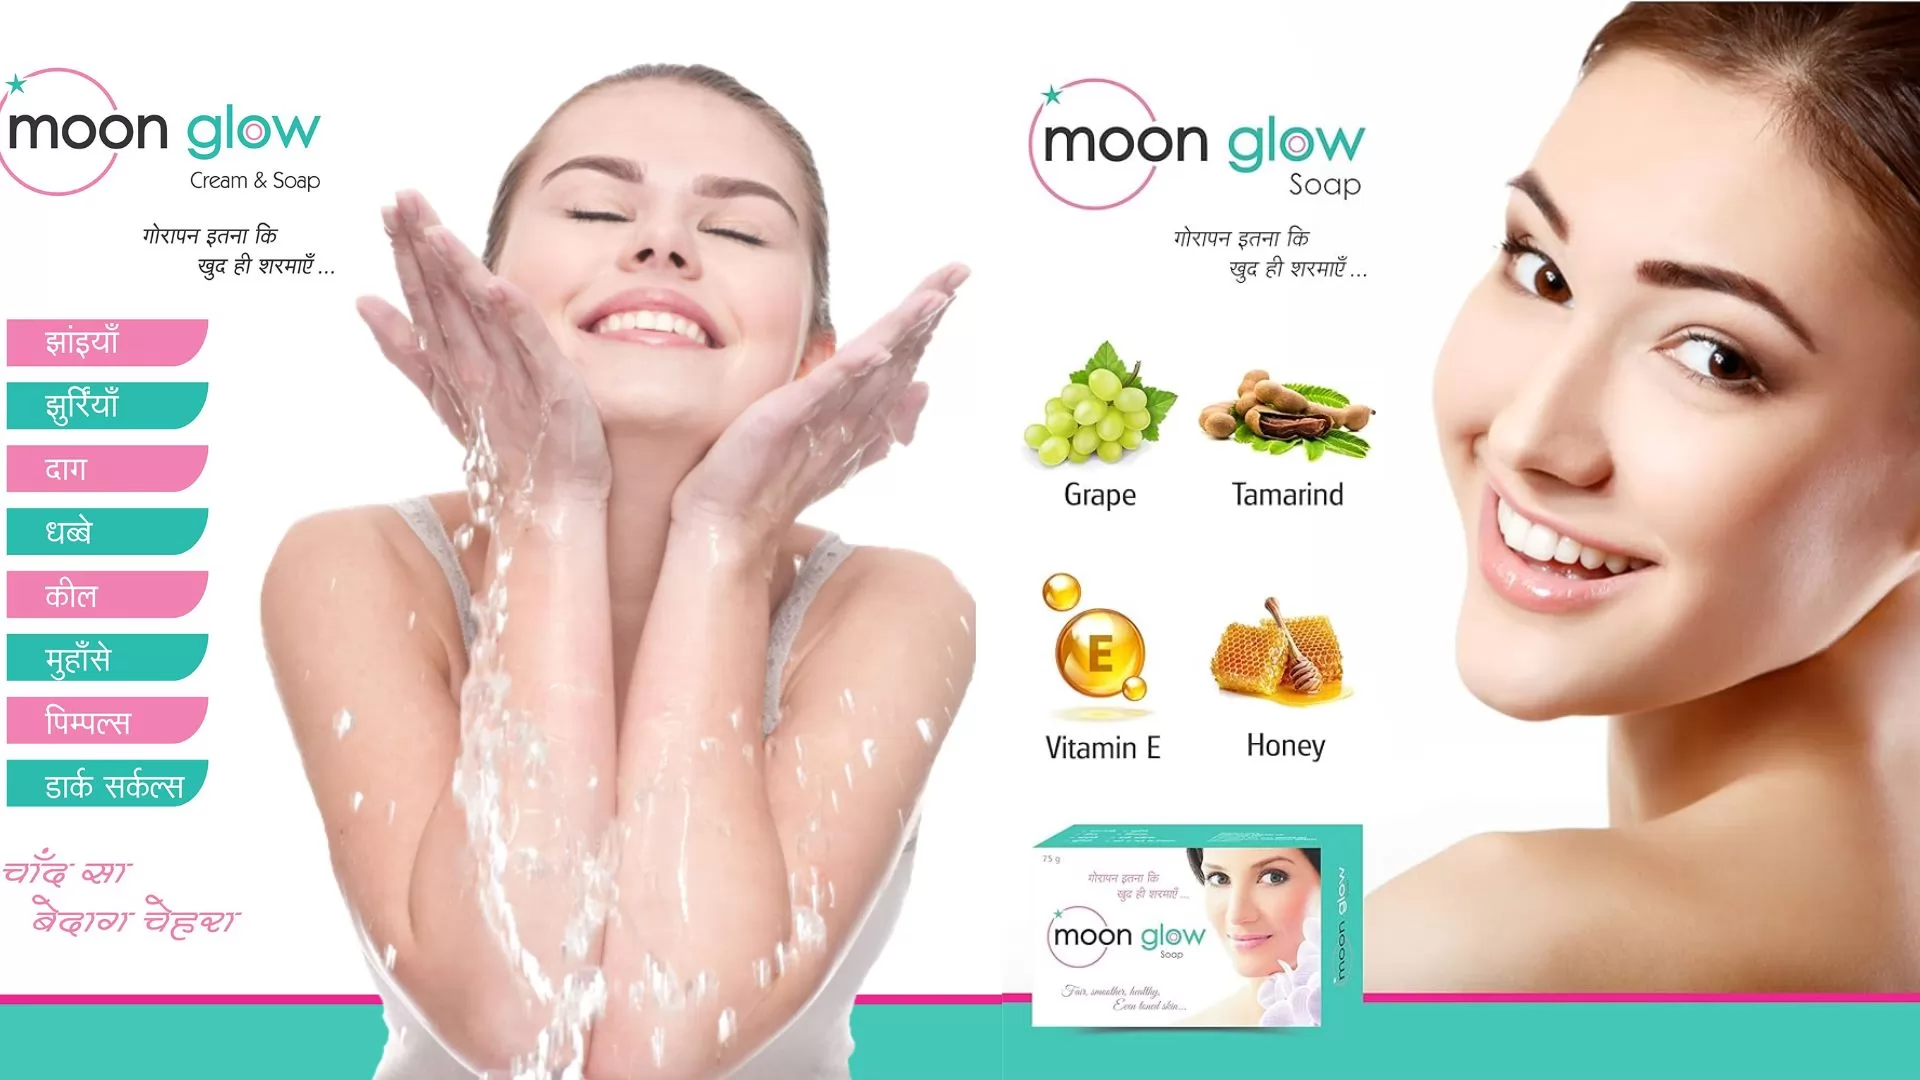 Moon Glow Fairness Soap